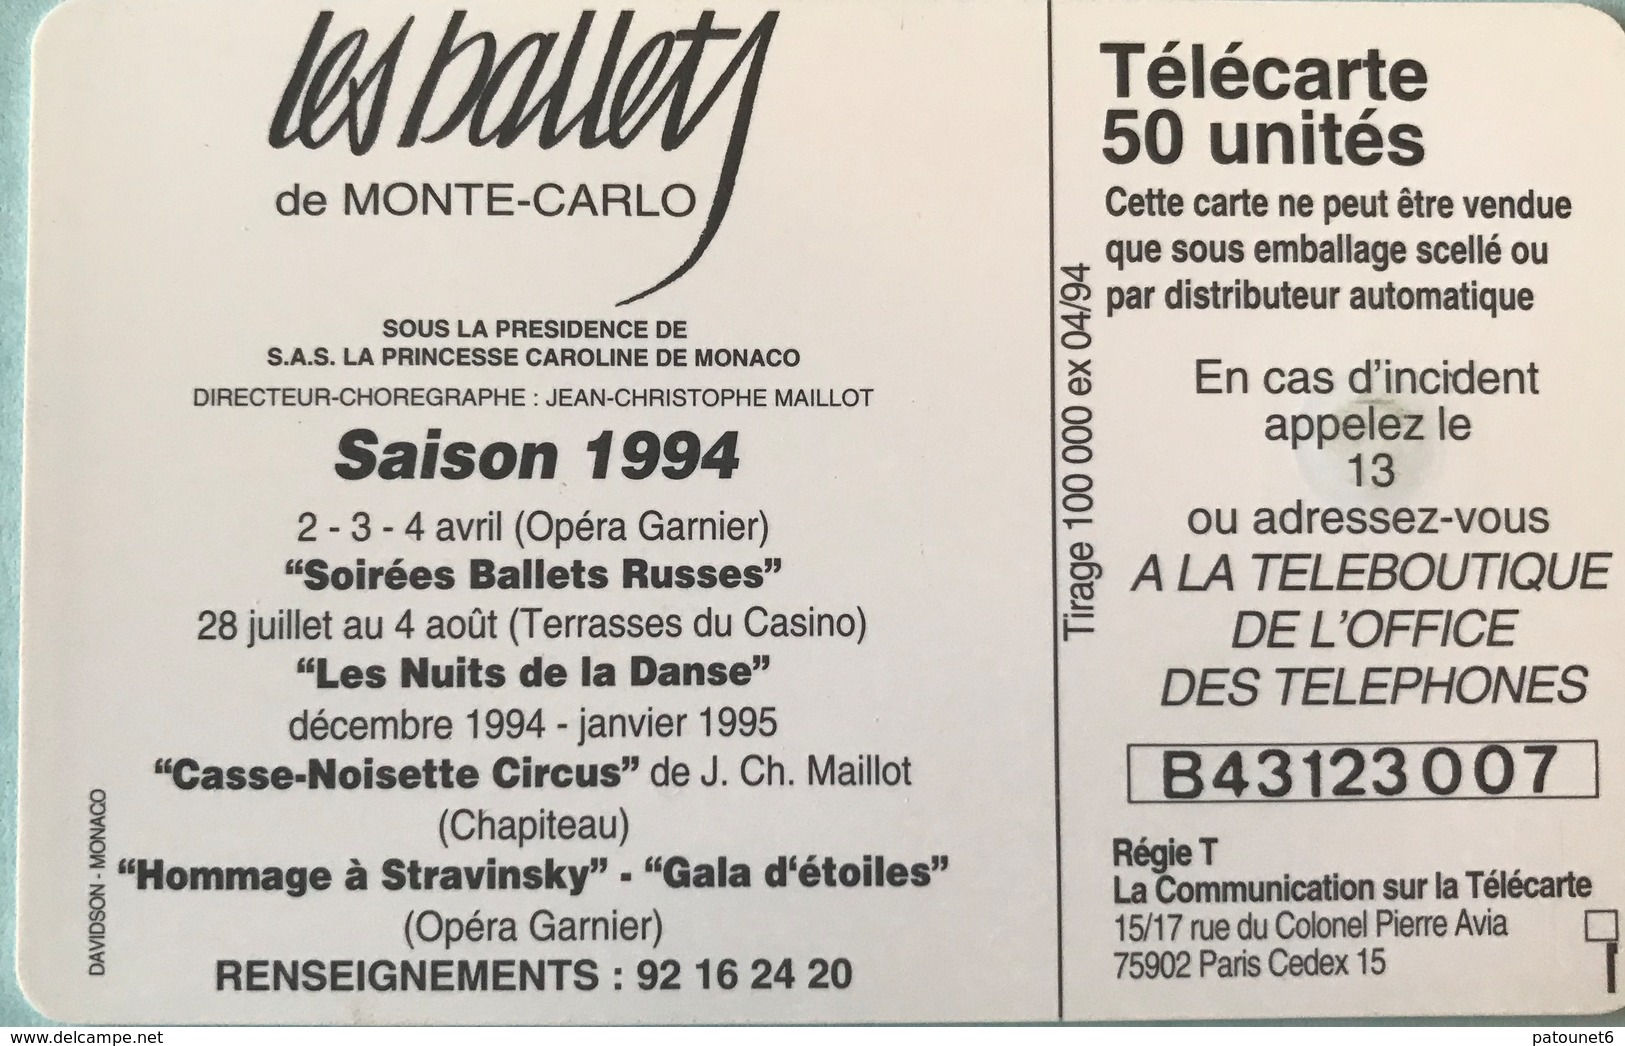 MONACO  -  Phonecard  -  MF 29  - Ballets 2 - Saison 94  -  50 Unités - Monaco